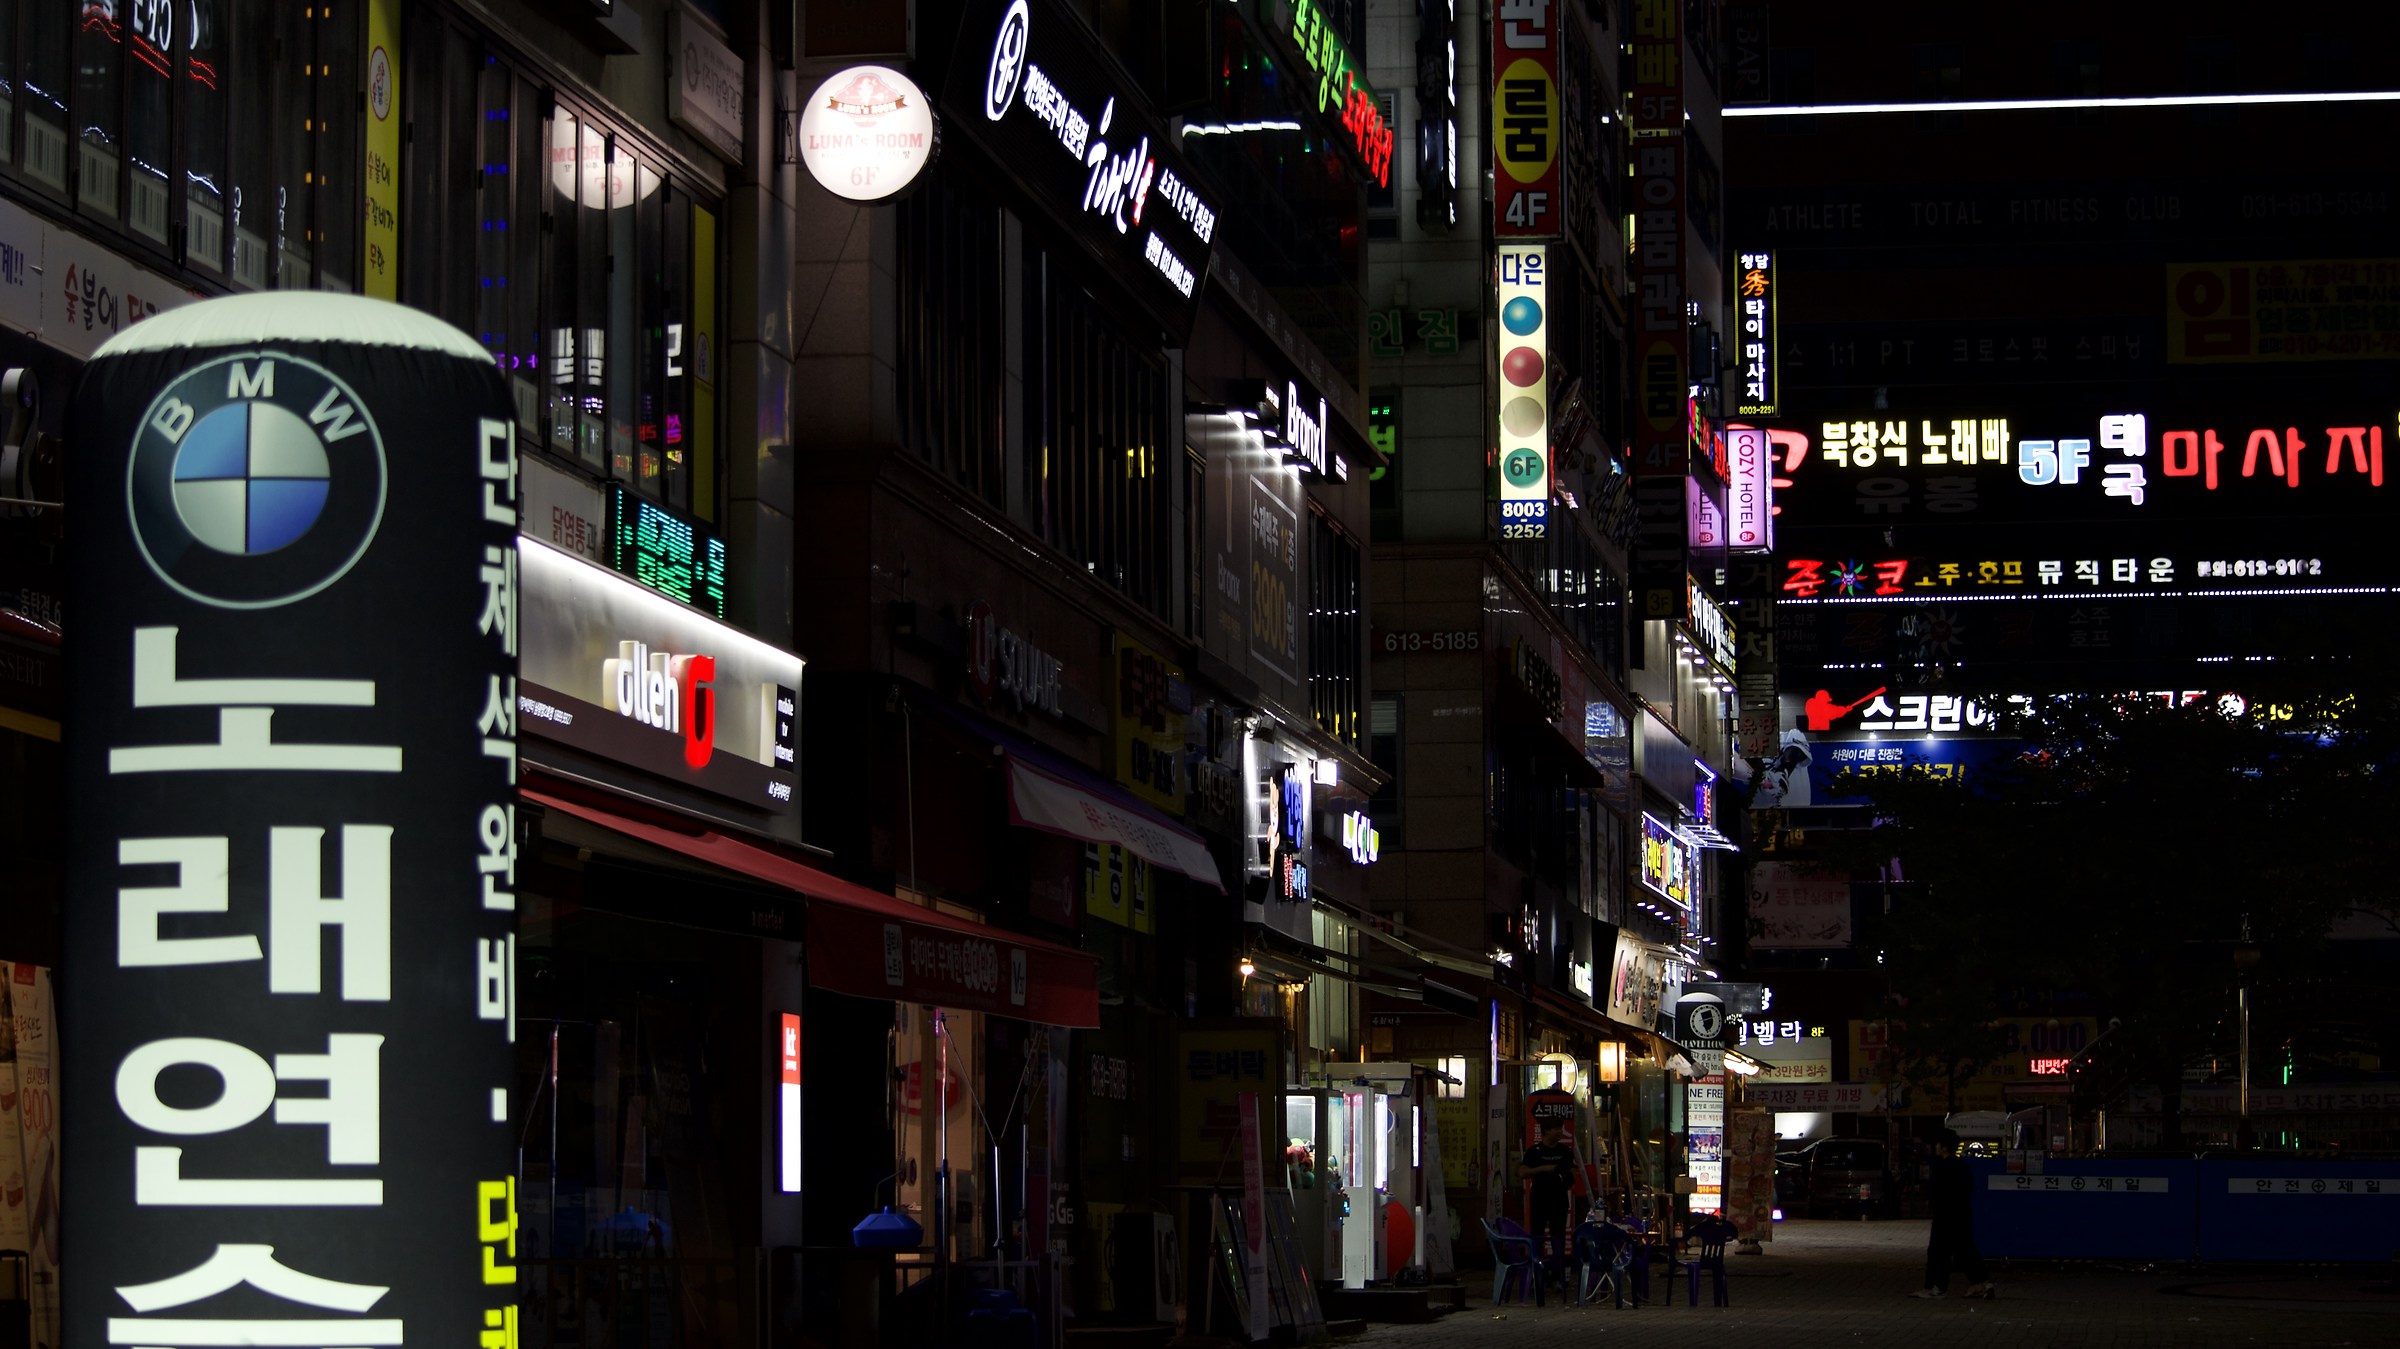 Korean buildings by night...